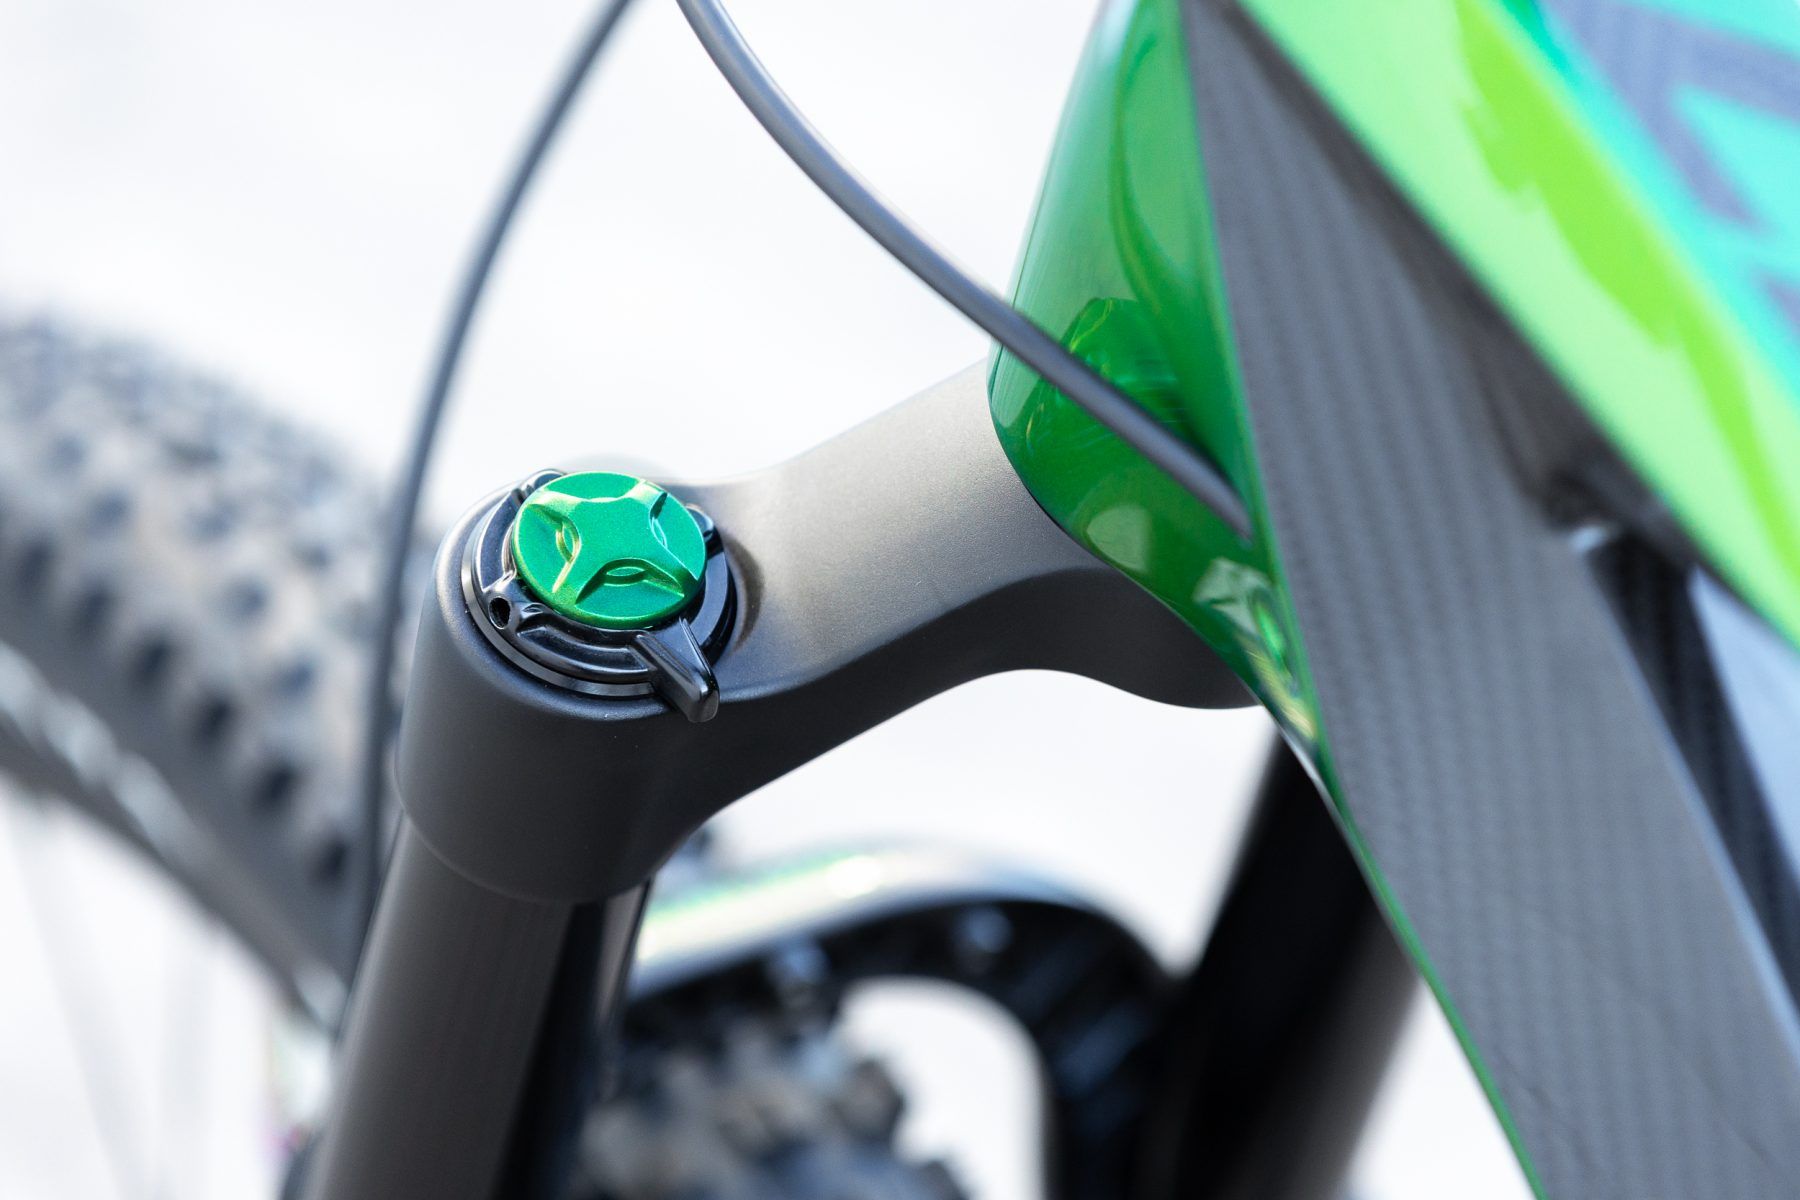 Mamba green antidote bike